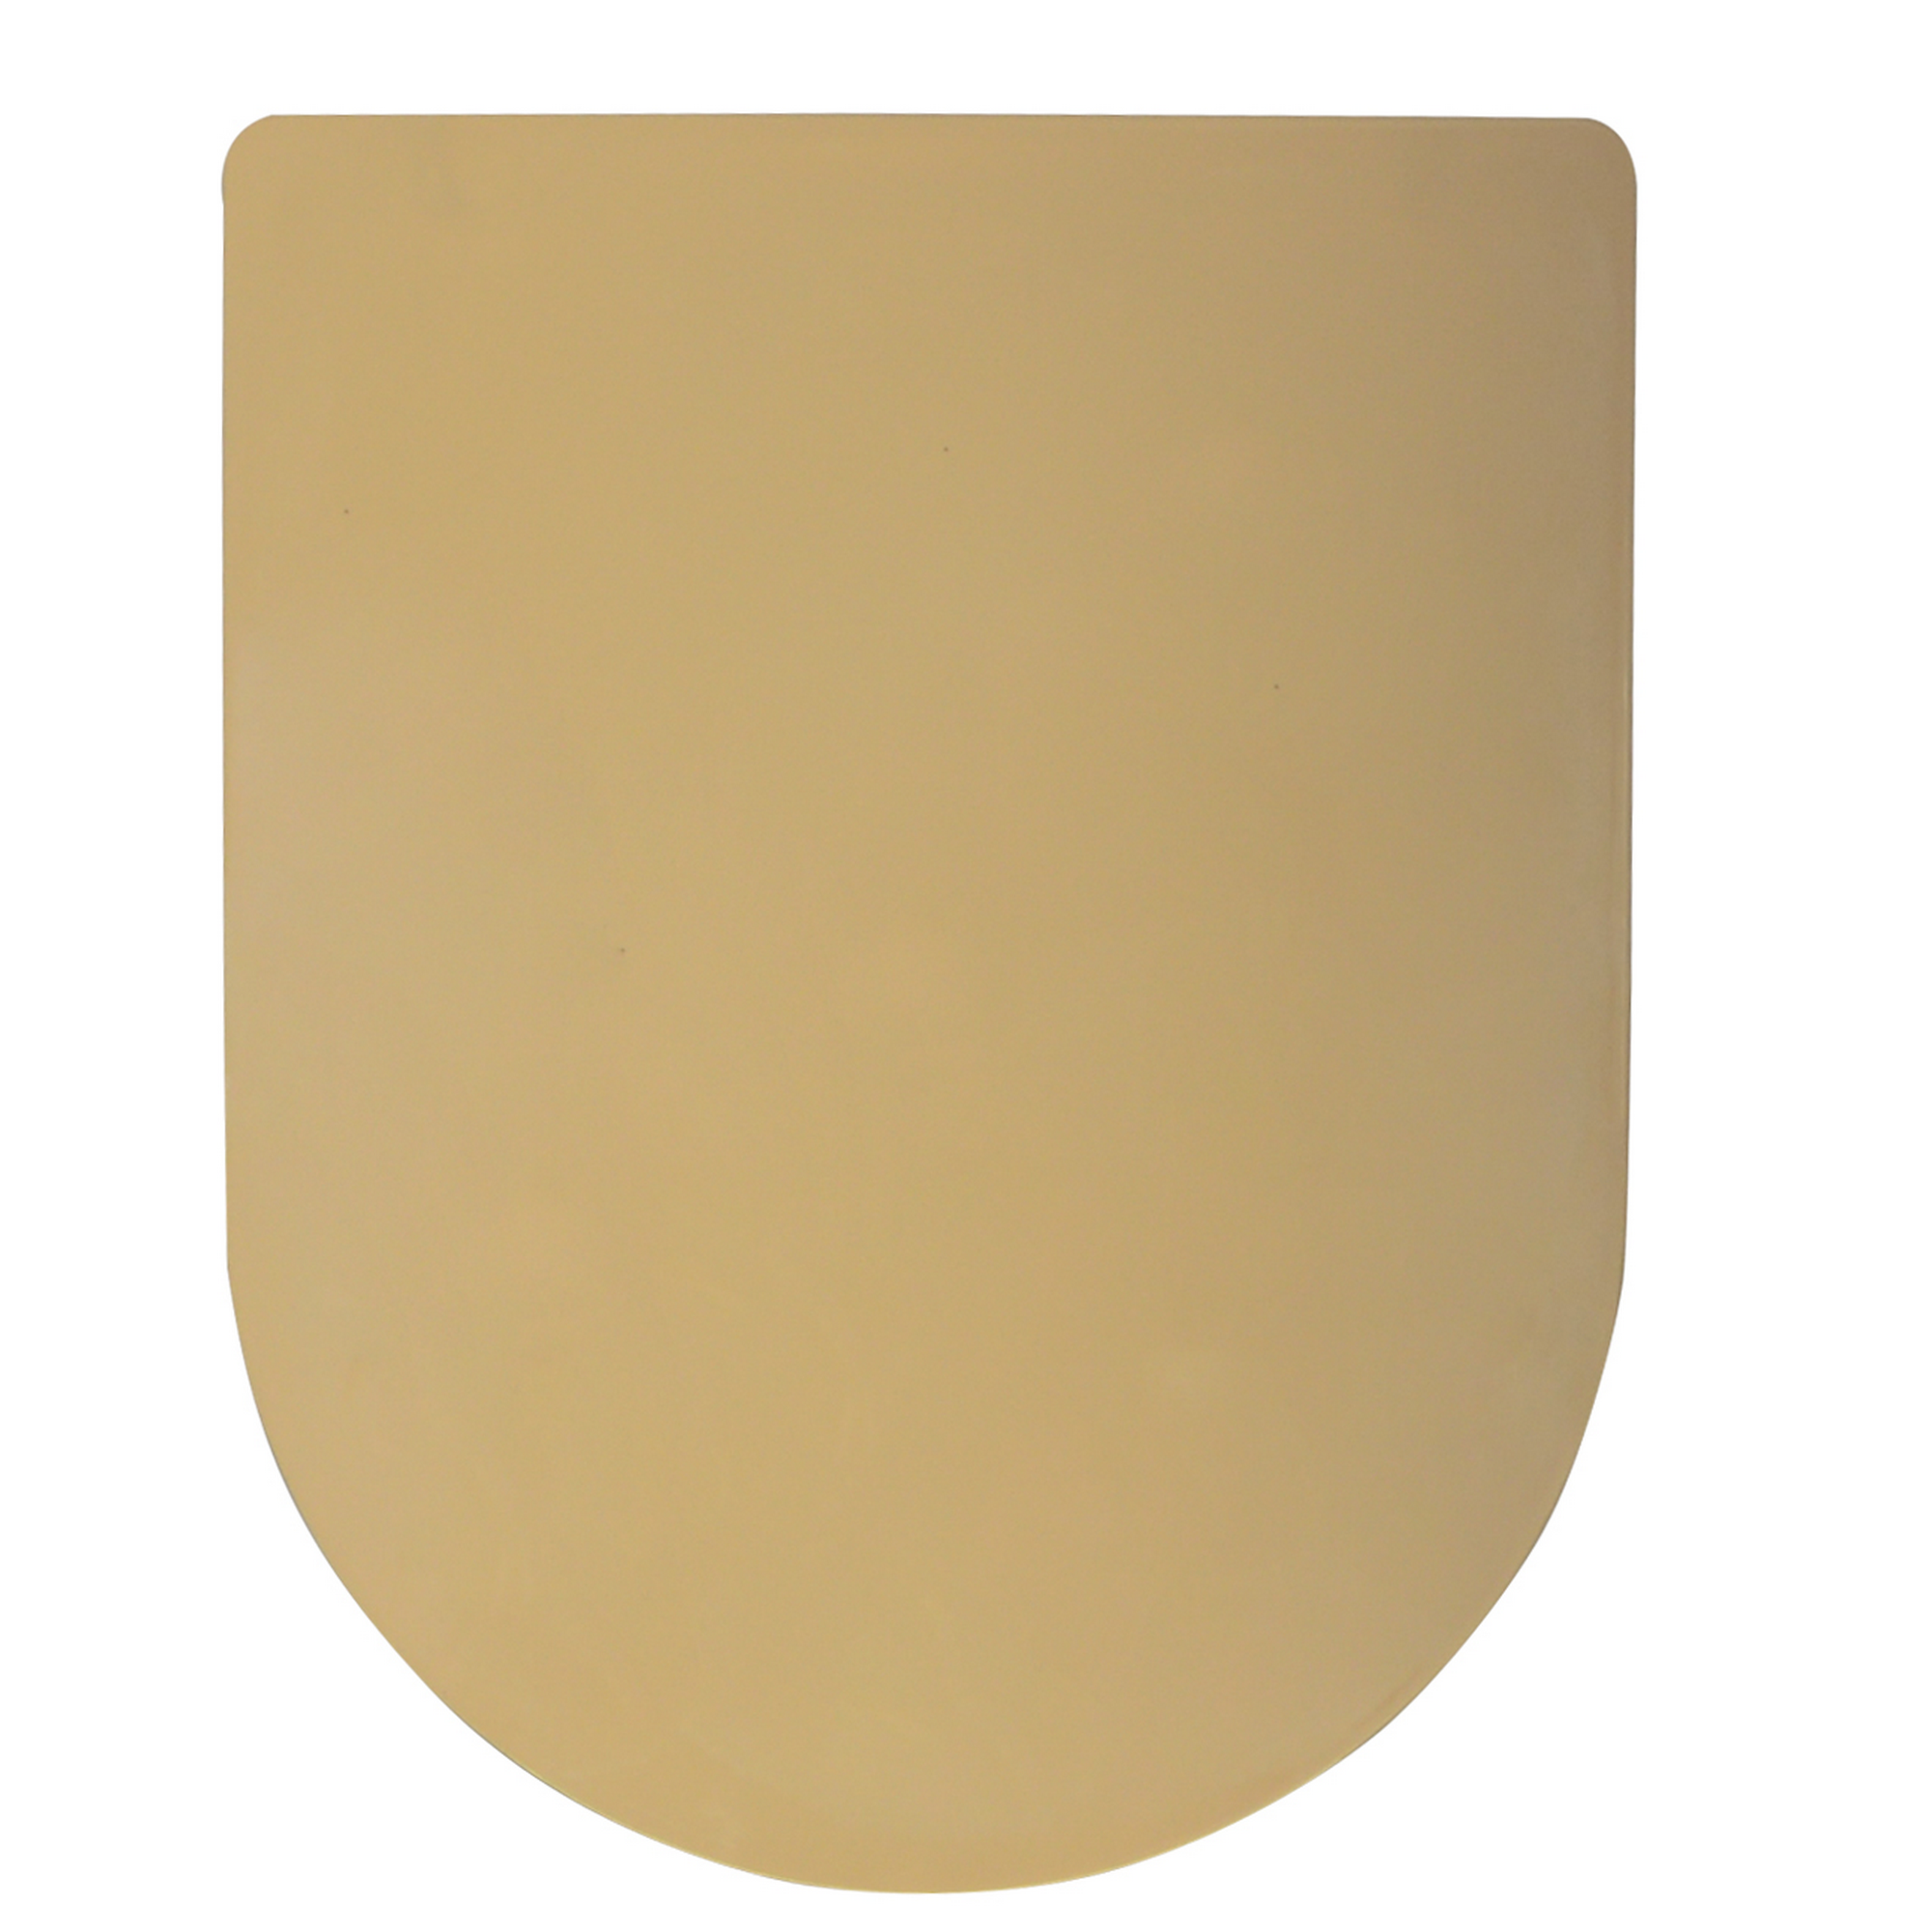 WC-Sitz 'SlimLine' beige Duroplast mit Absenkautomatik, eckige Form + product picture